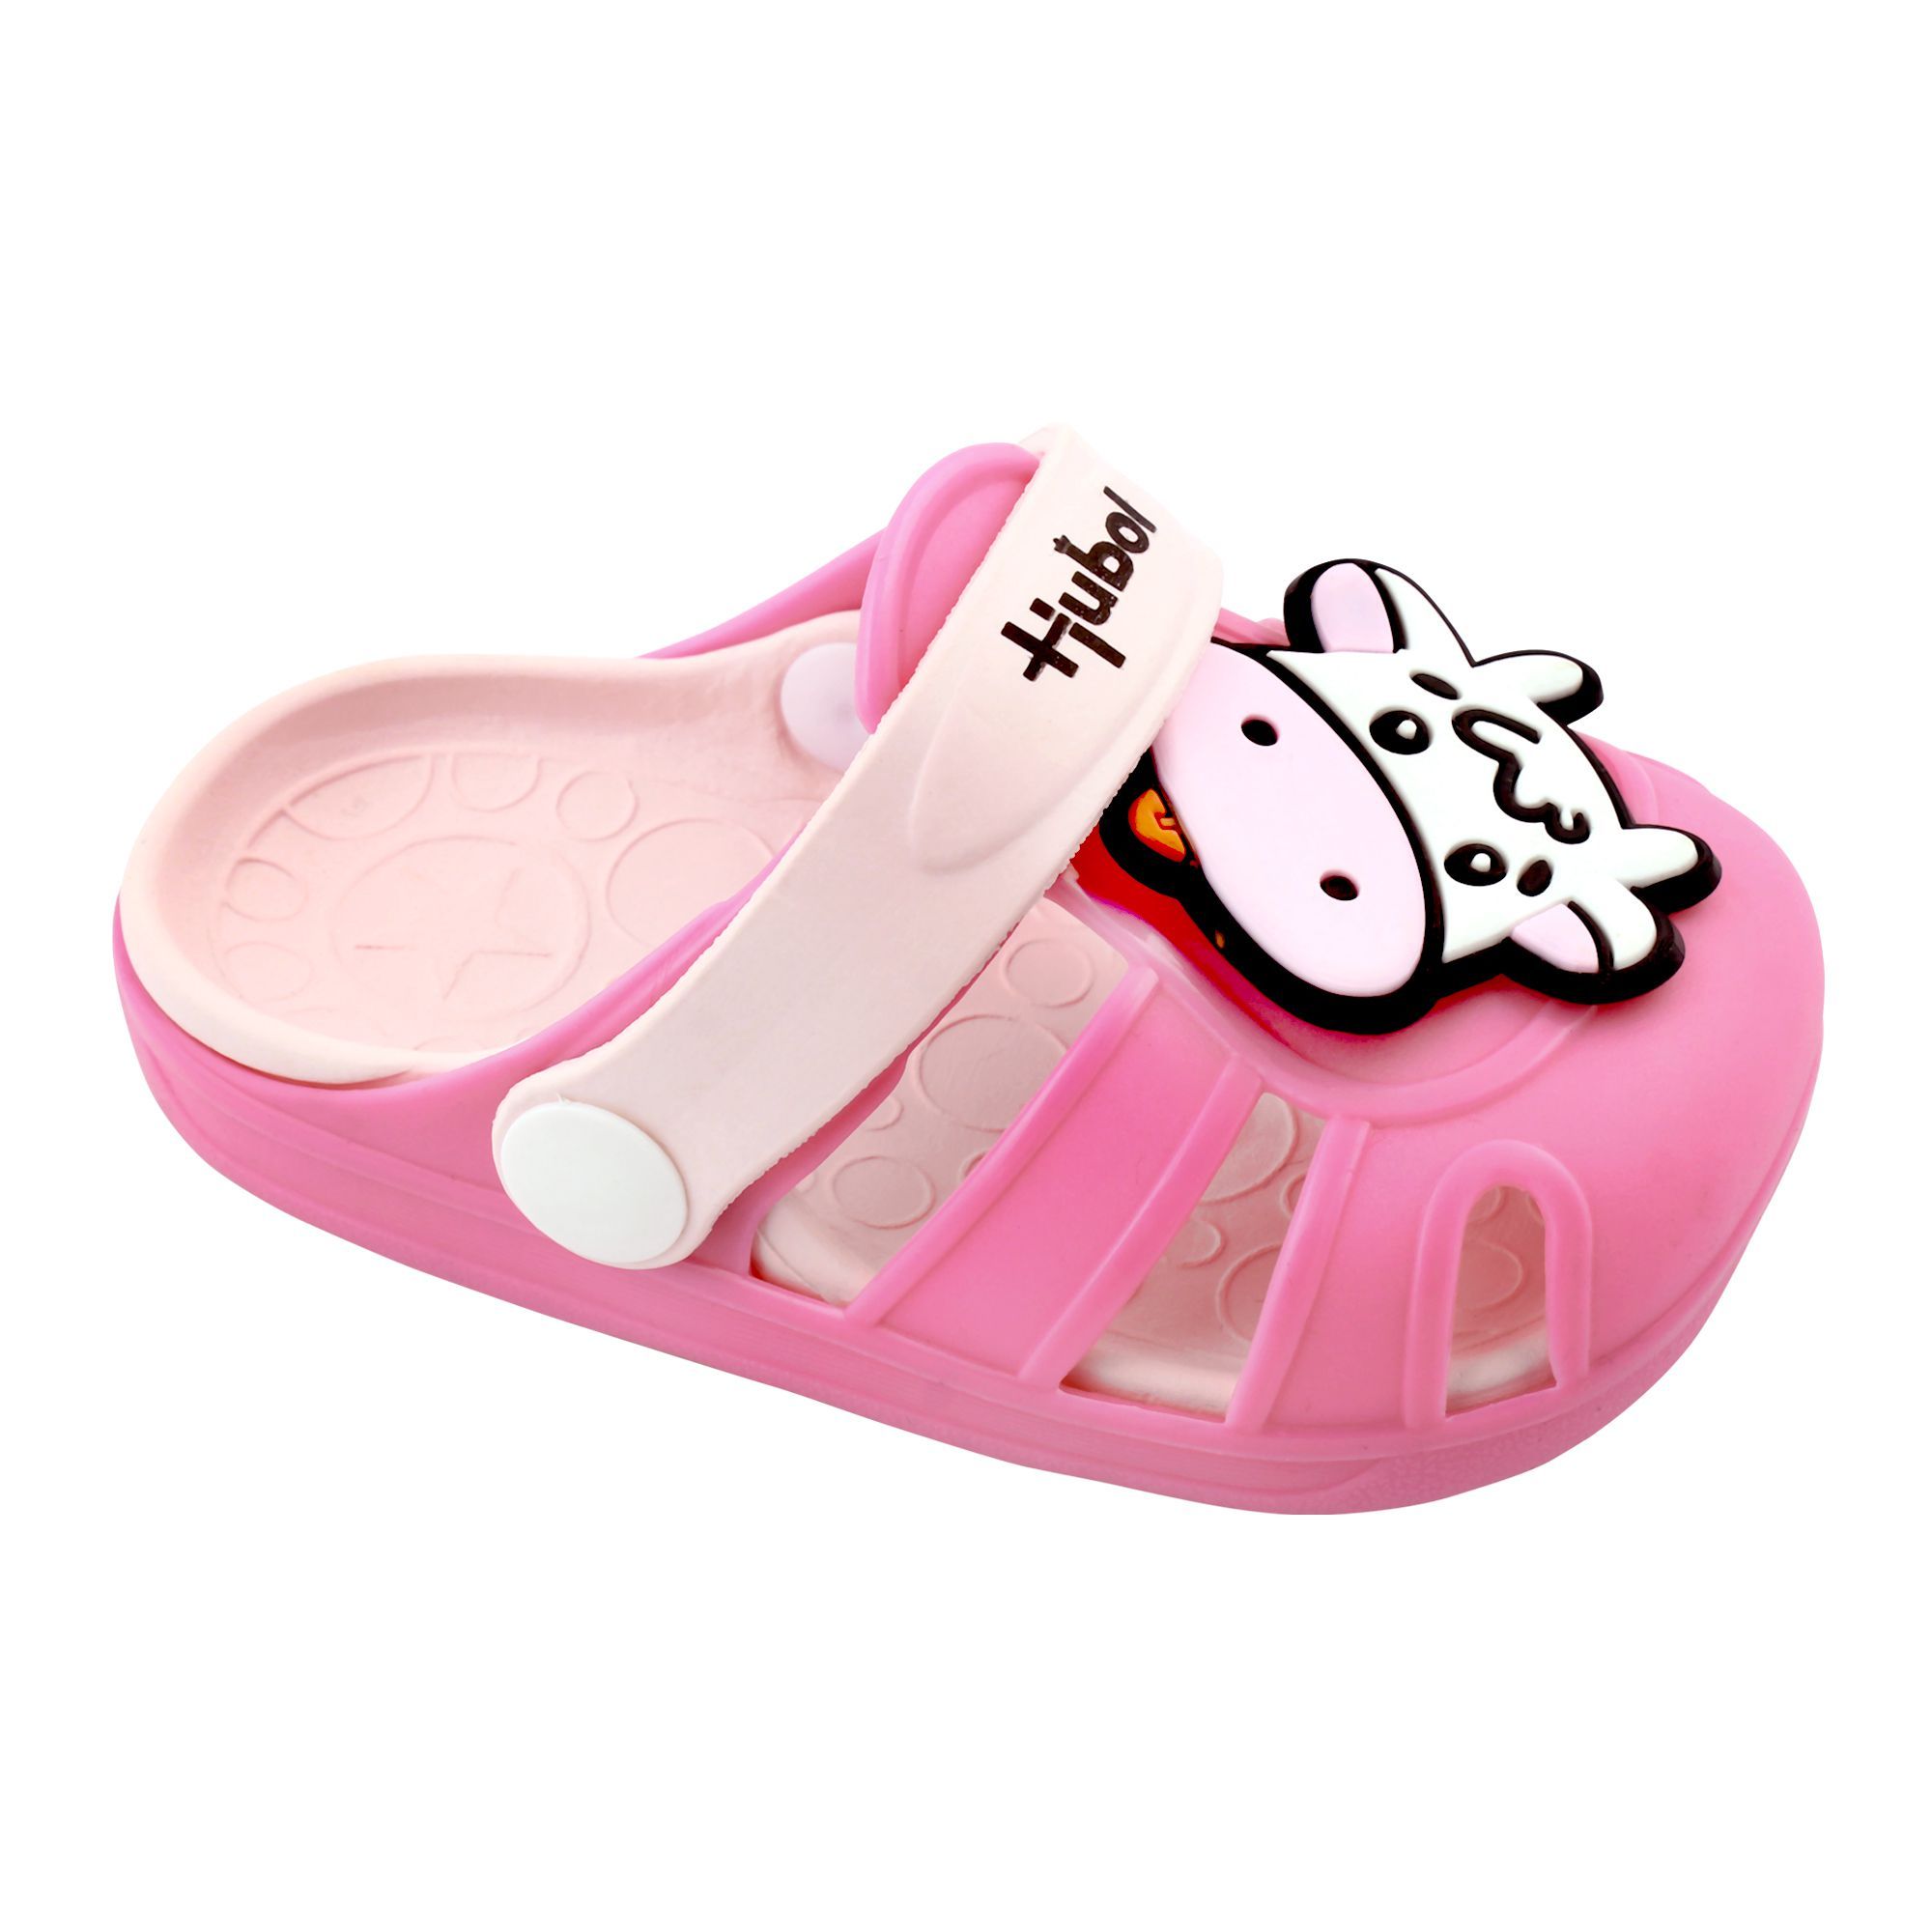 Buy Baby Crocs Kids Sandals, F-2, Pink 